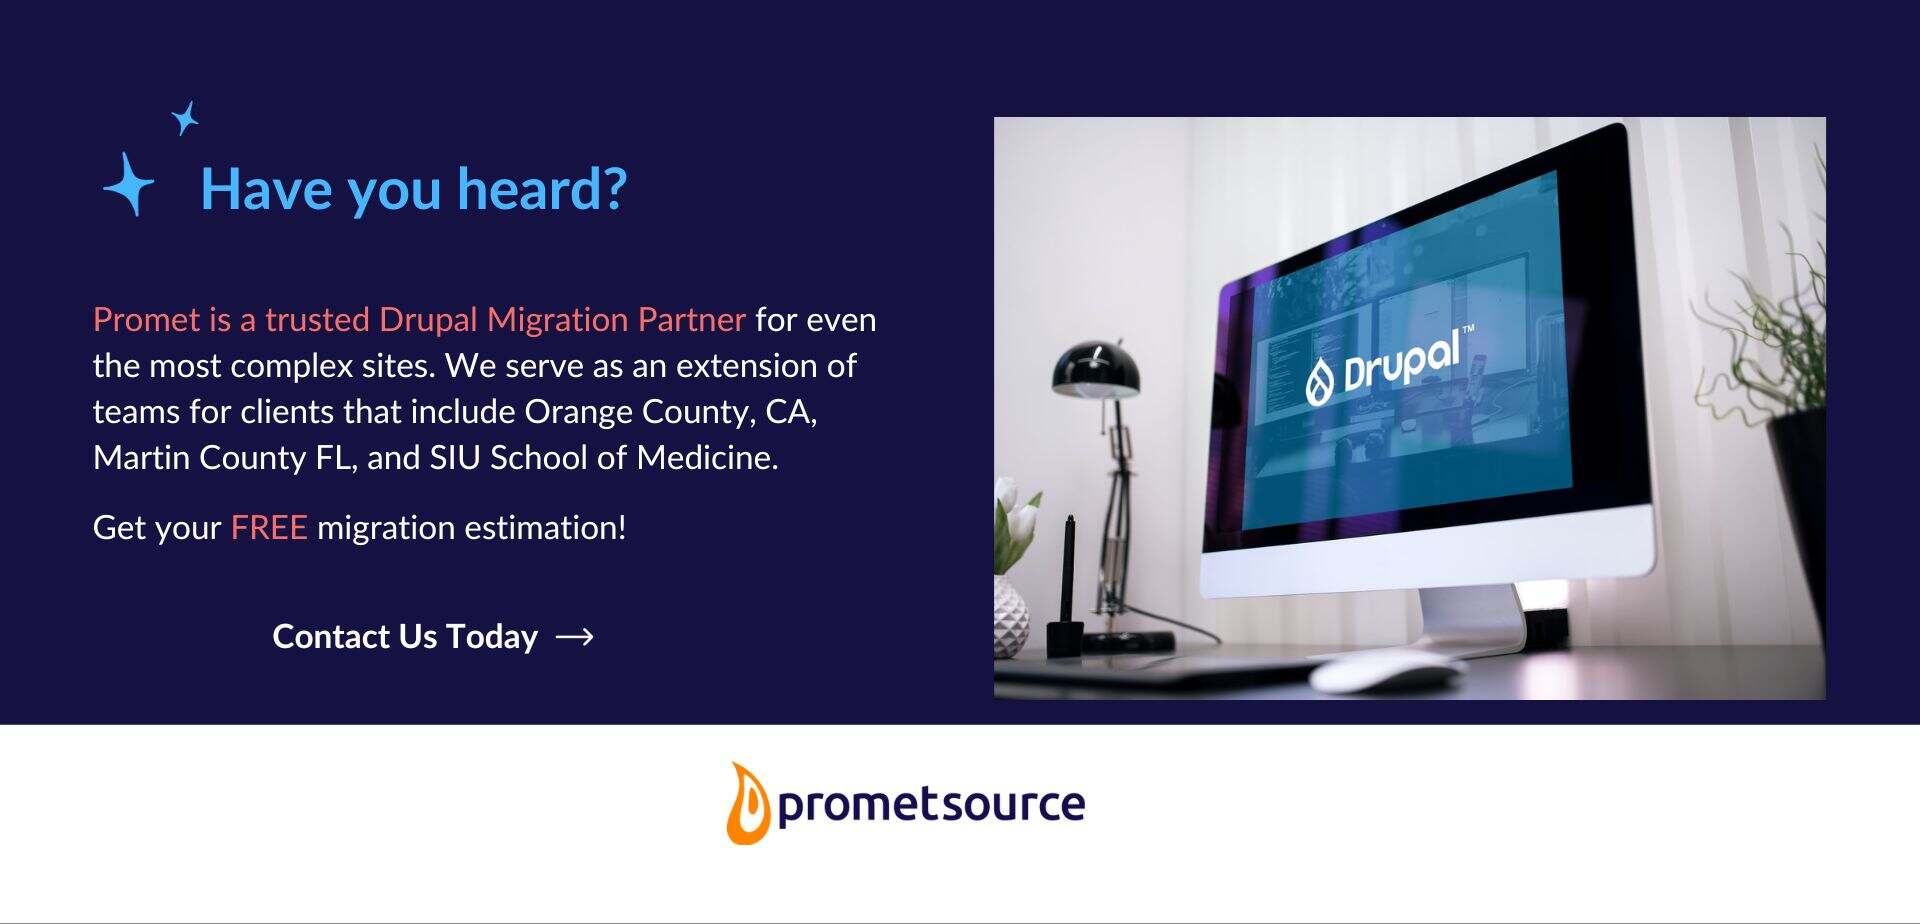 Promet Source is a certified Drupal migration partner